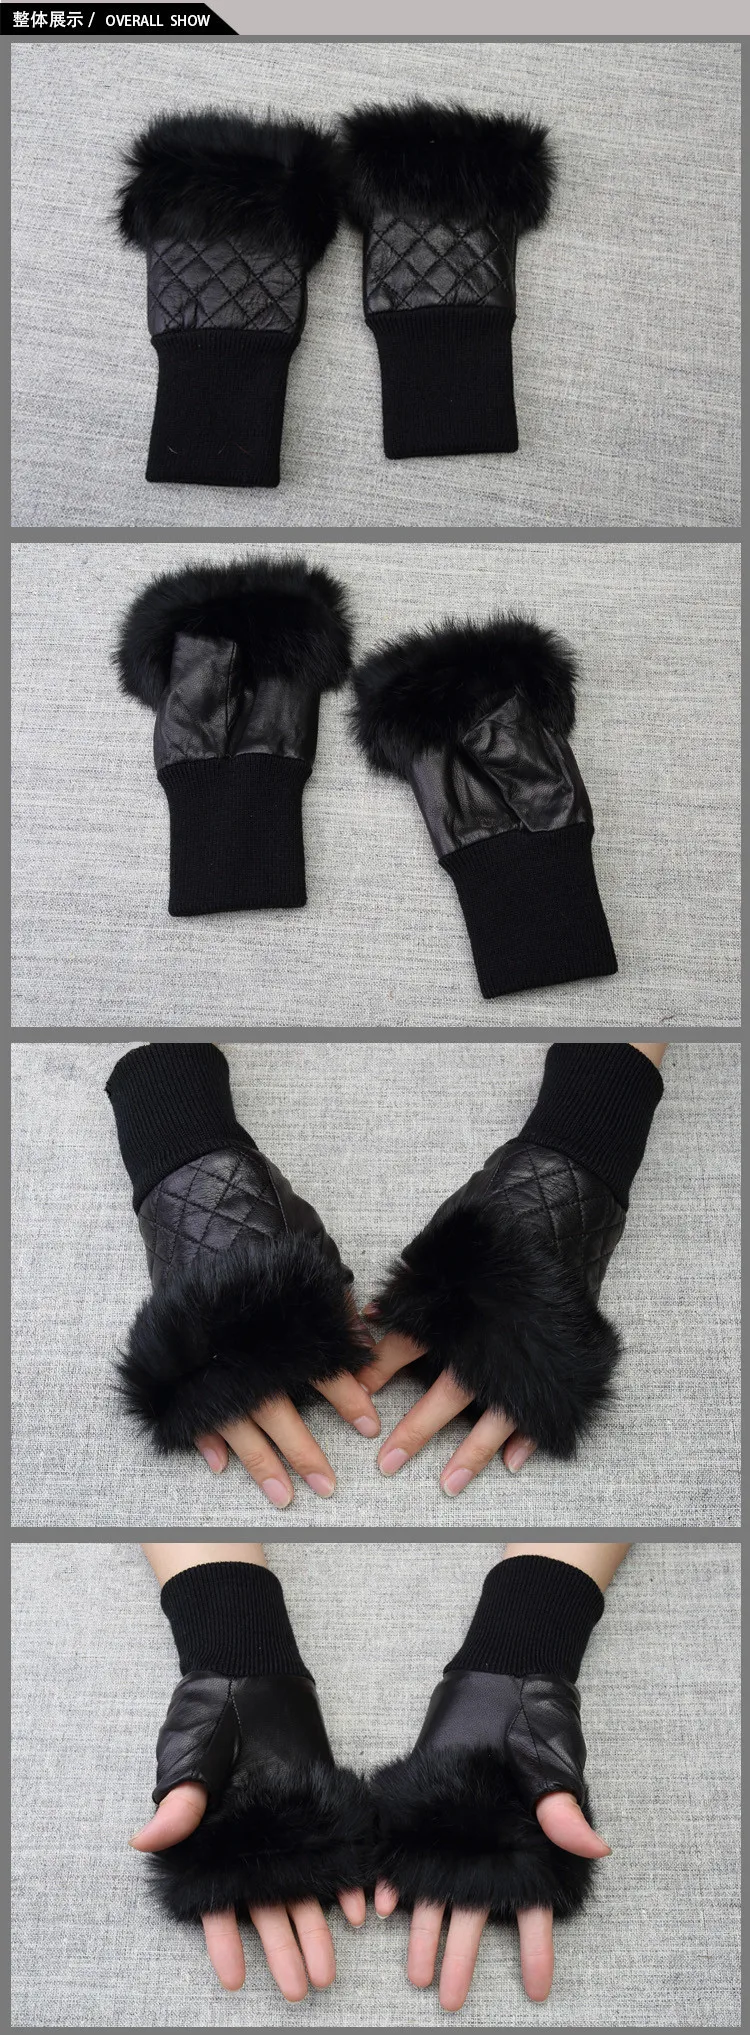 Высокое качество Элегантные Для женщин кожаные перчатки из натуральной кожи без пальцев с натуральным мехом осень-весна Термальность